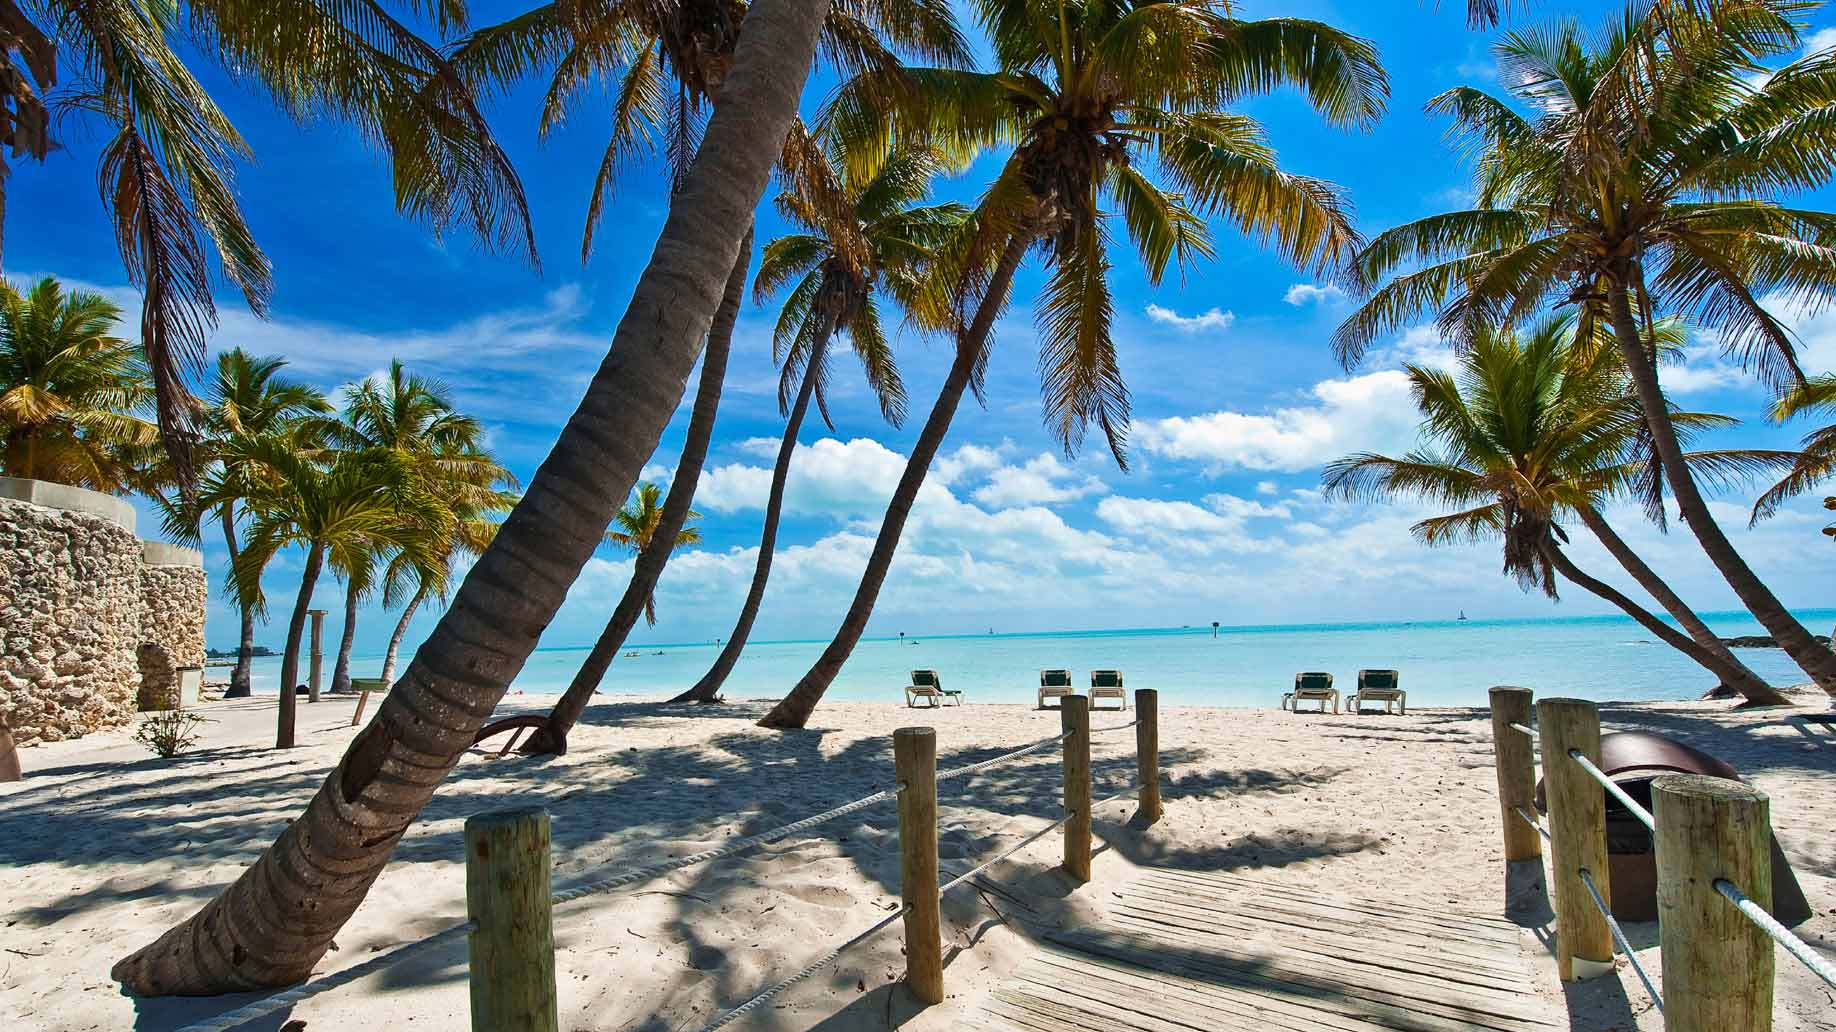 Захватывающее путешествие по Америке: Майами, Ки-Уэст, Багамы - Туристический оператор APL Travel (АПЛ Тревел)